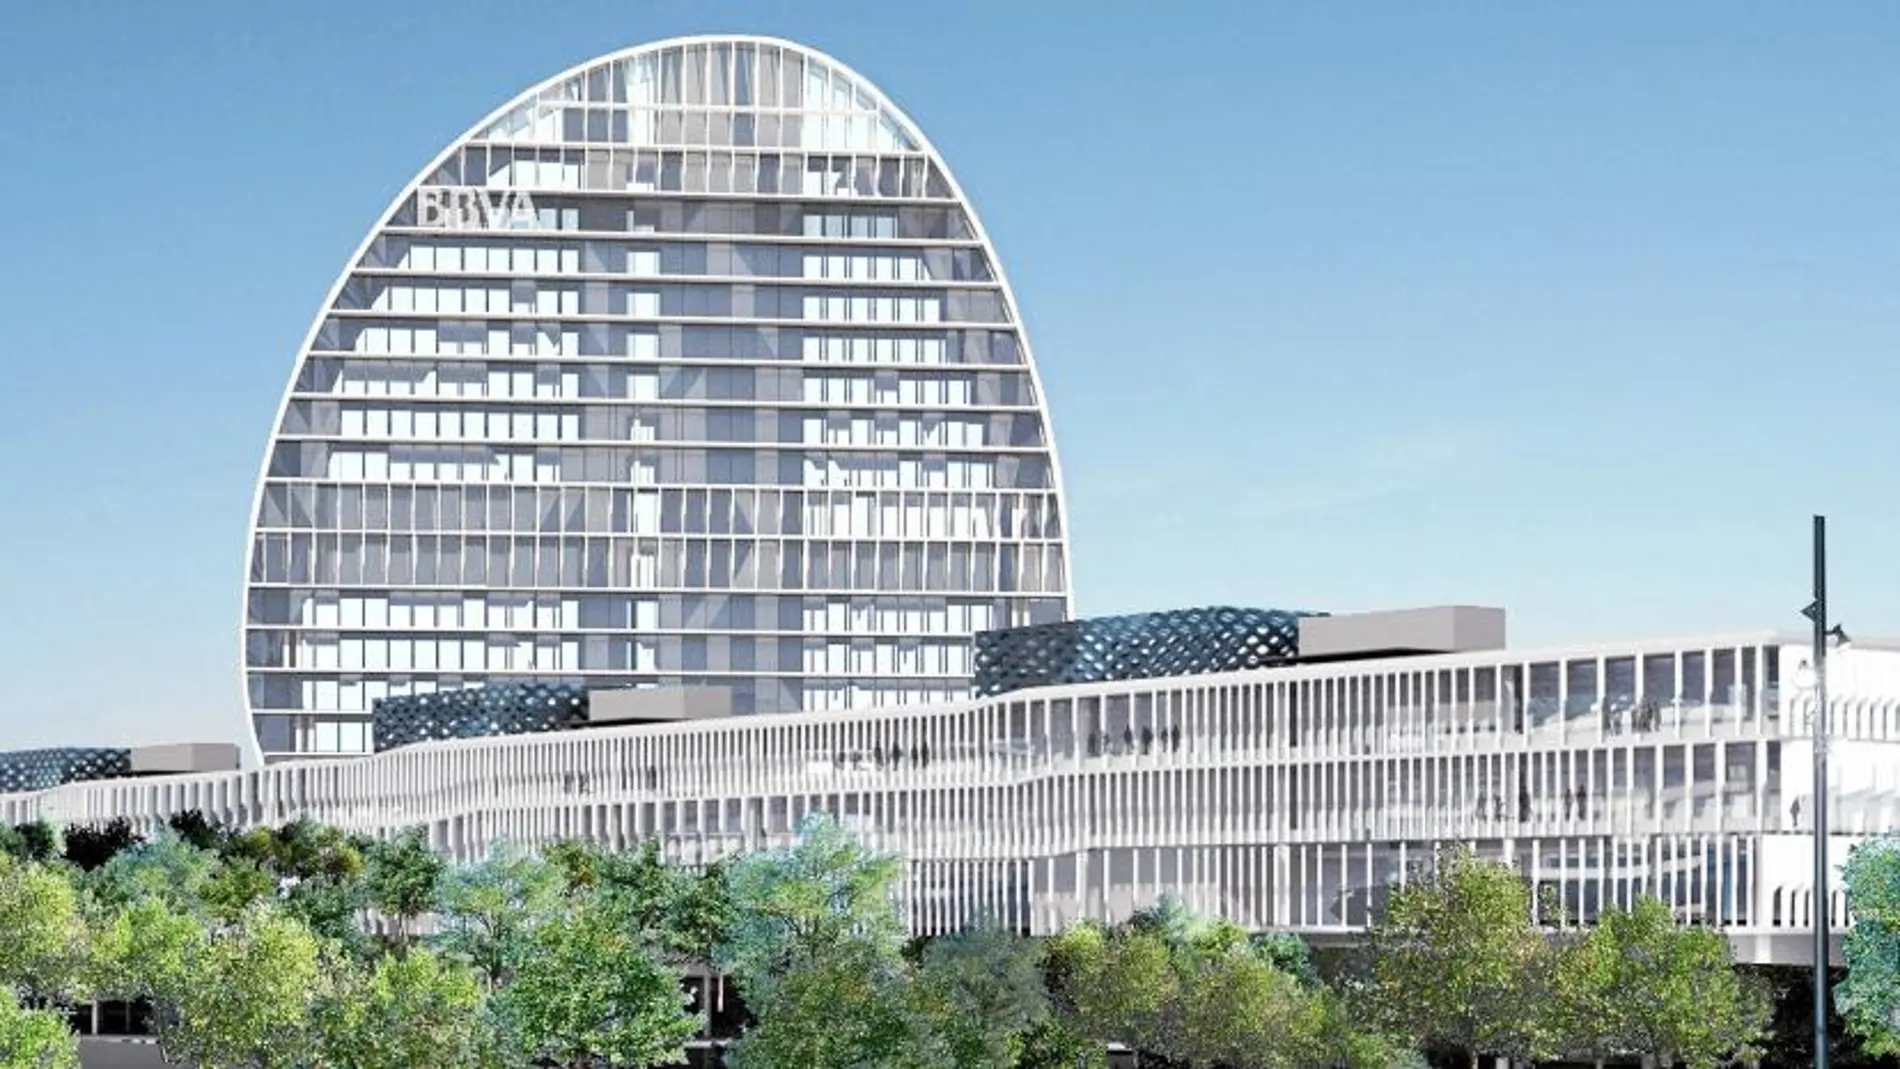 La nueva sede de la entidad bancaria tendrá una superficie total de 114.000 metros cuadrados y siete edificios bajos además de una torre de forma elíptica